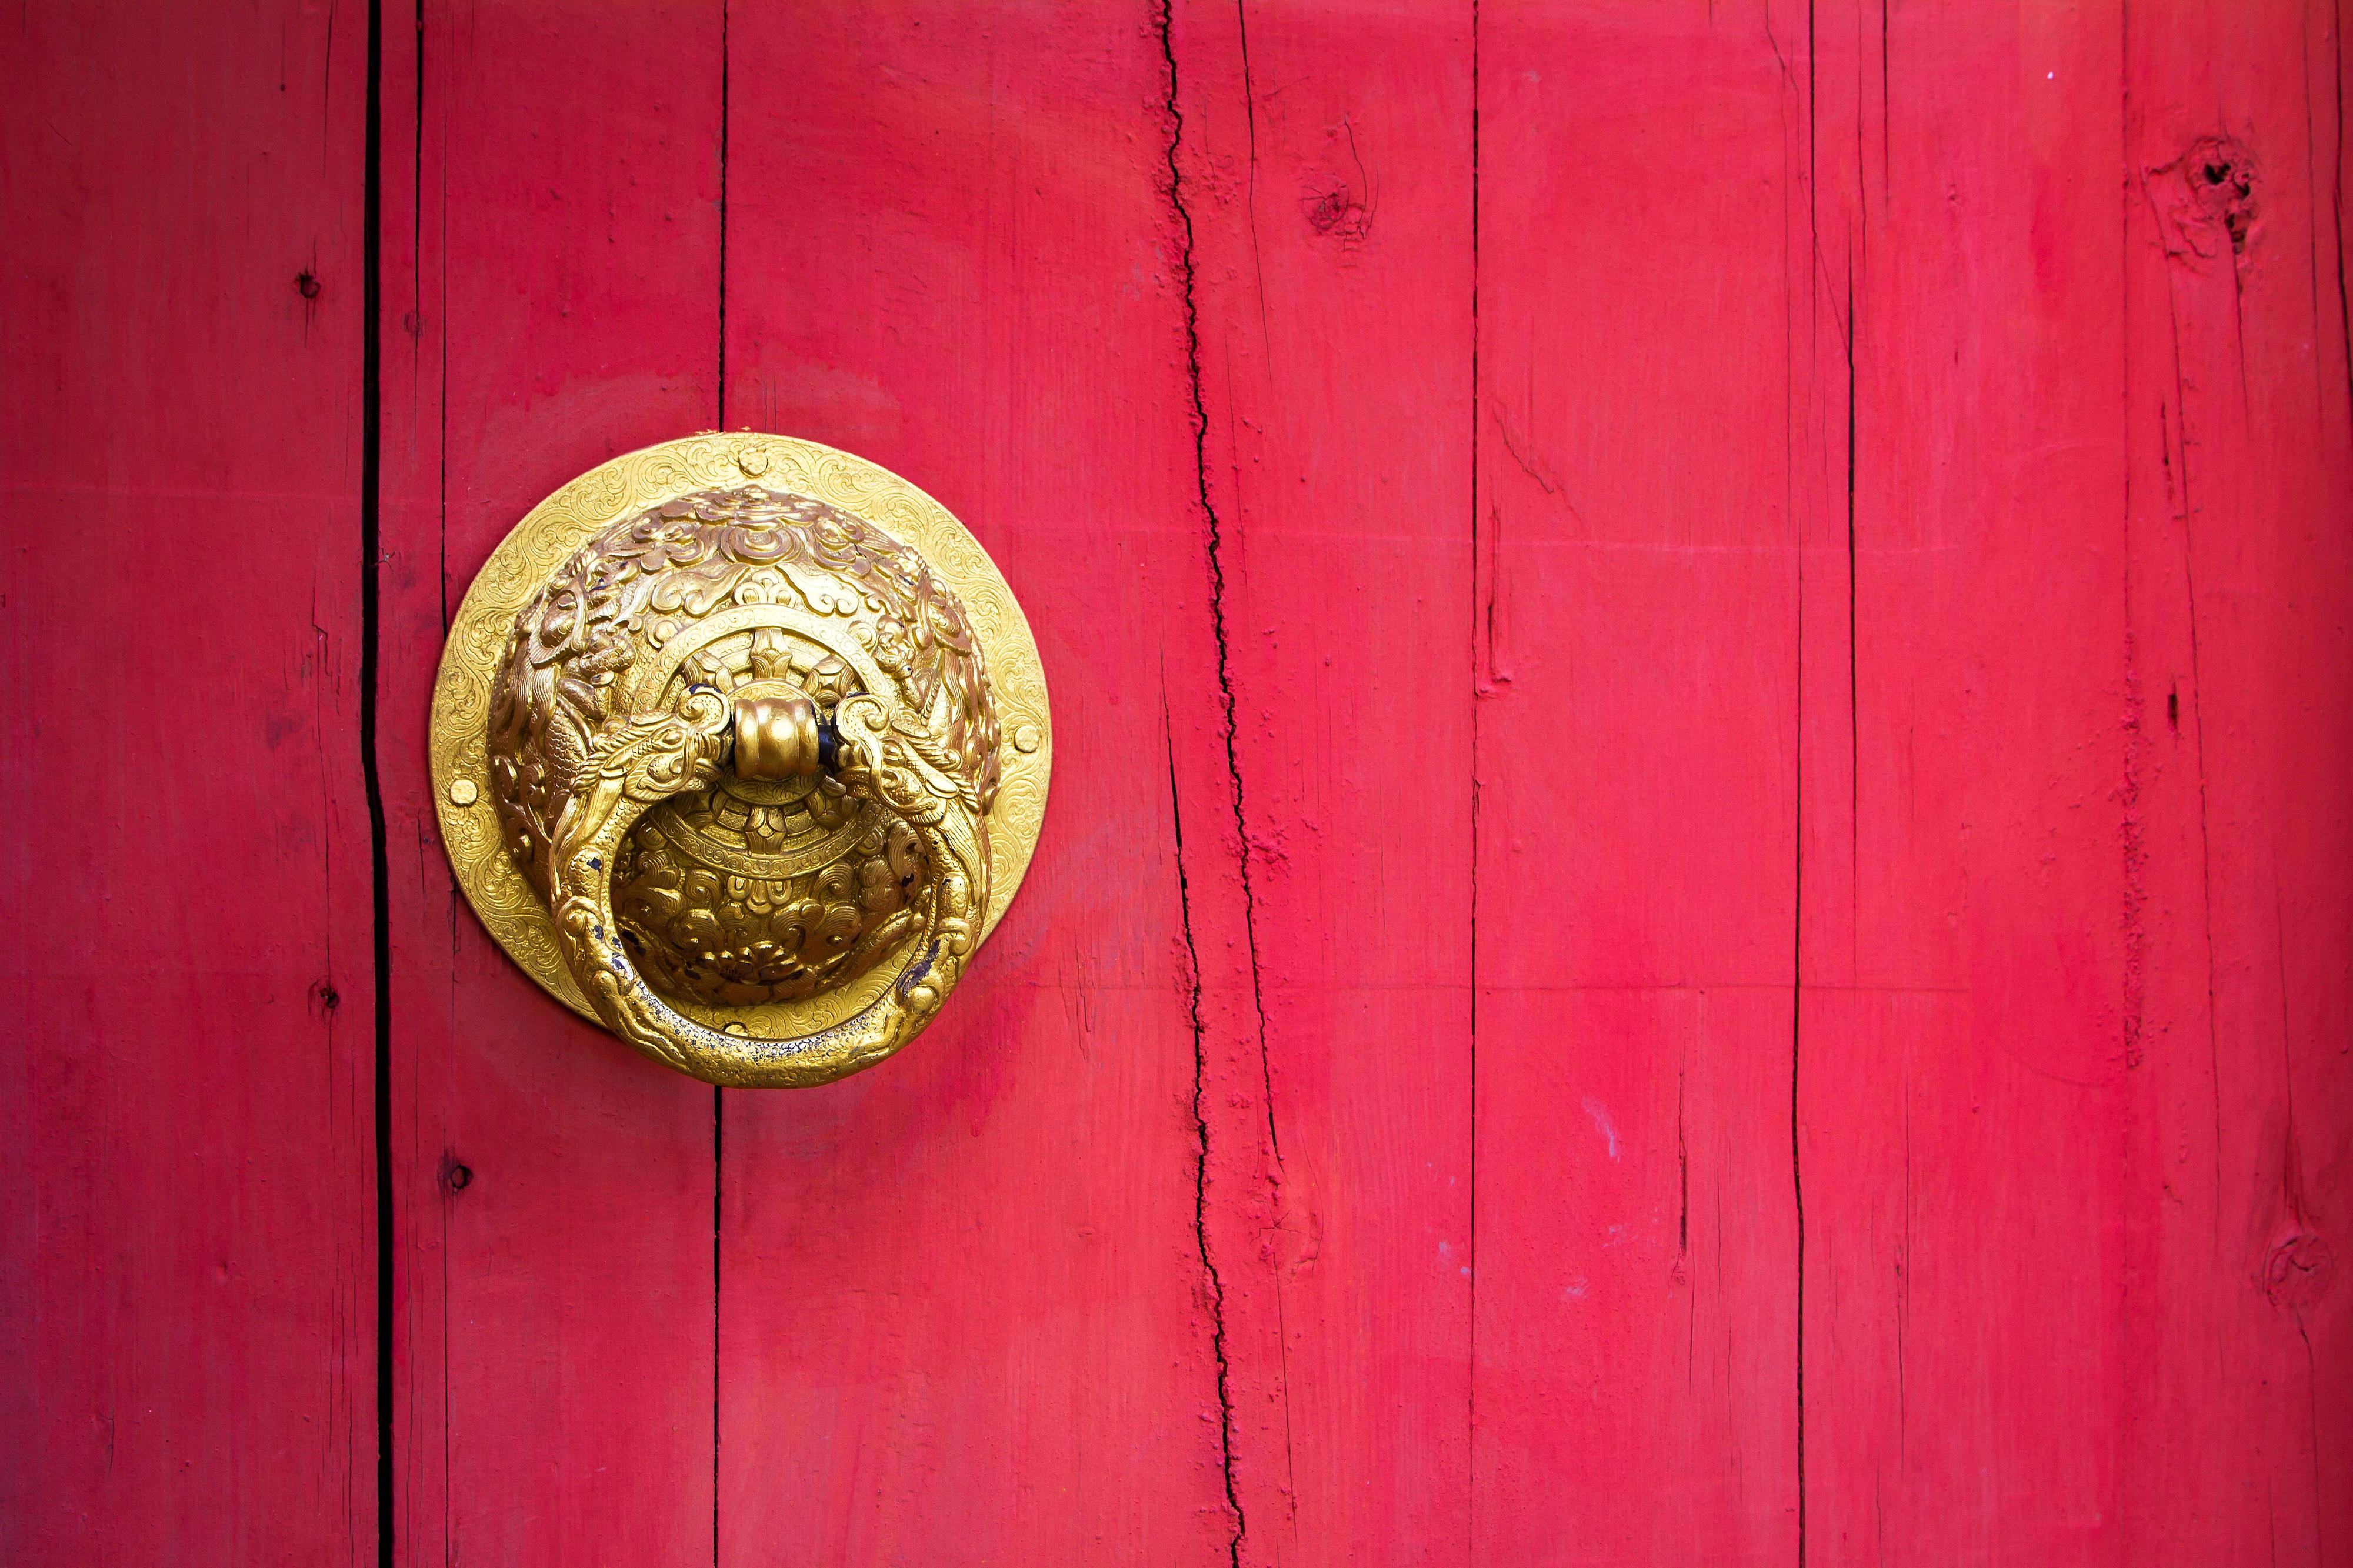 Door with golden handle in dragon shape